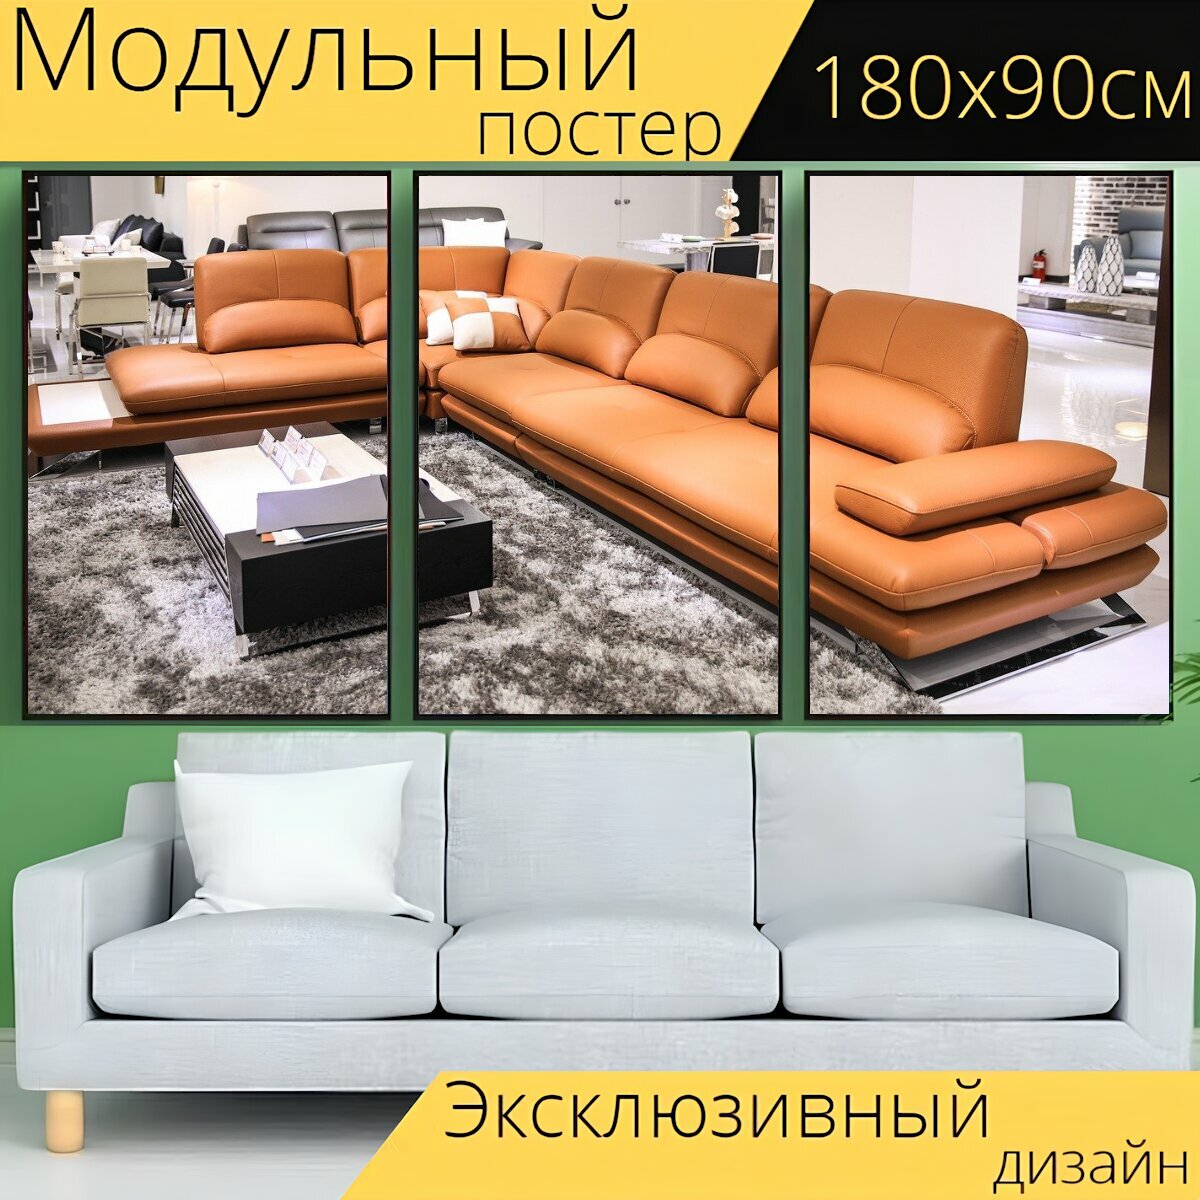 Модульный постер "Диван, кресло, мебель" 180 x 90 см. для интерьера